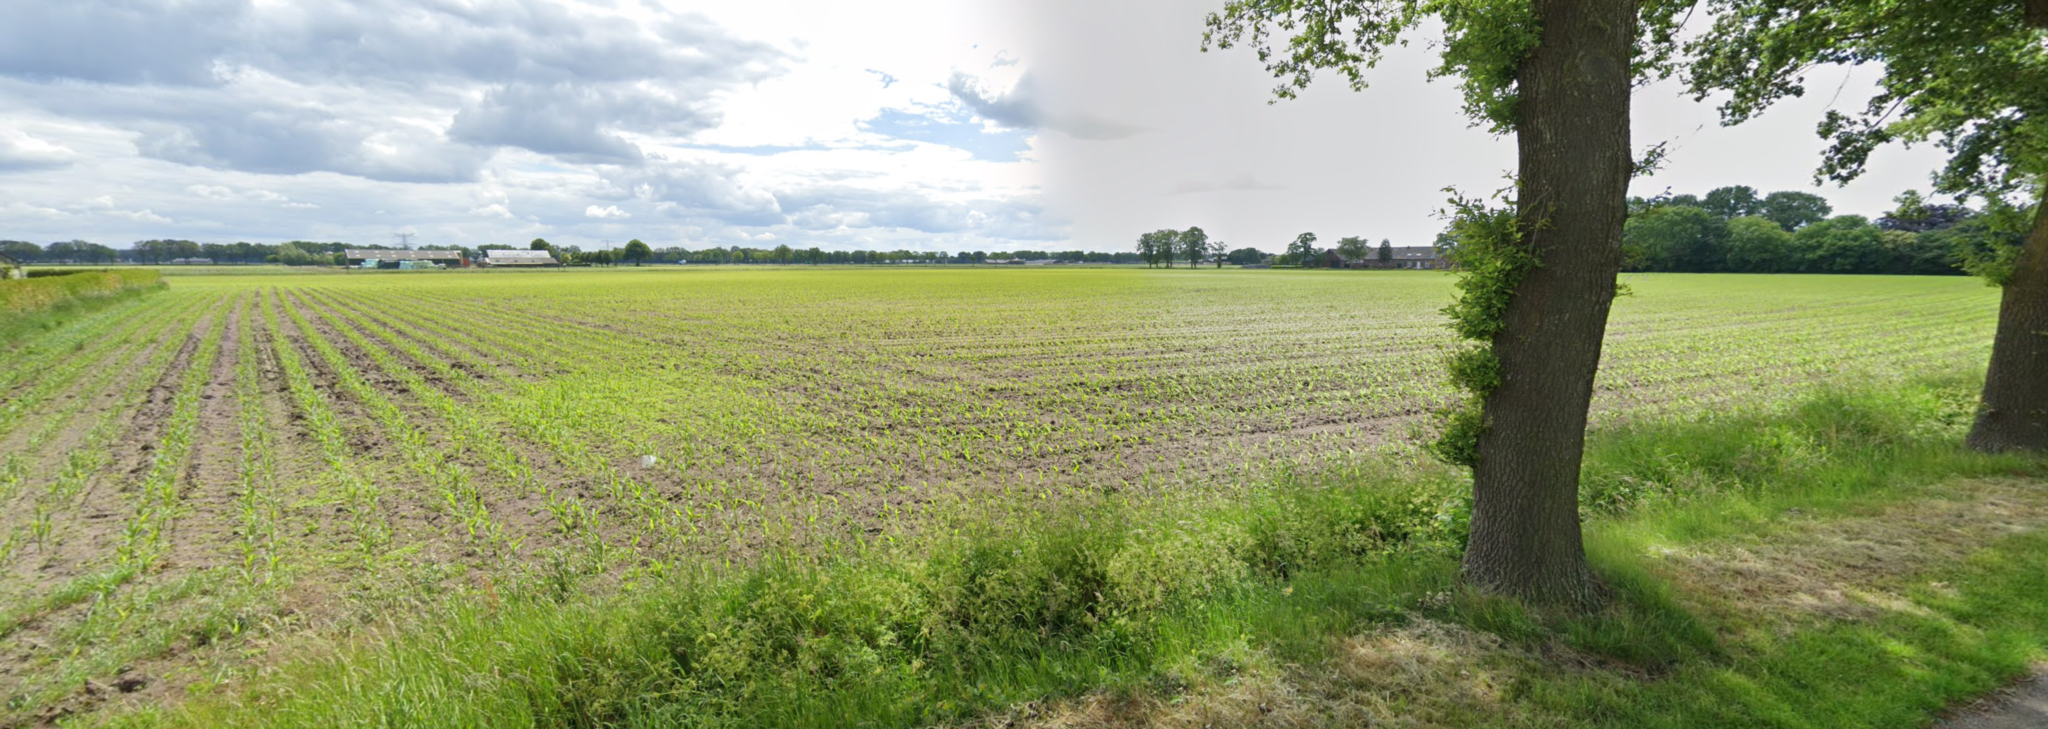 Te koop: Goed gelegen percelen landbouwgrond in het landelijke buitengebied van Oploo!